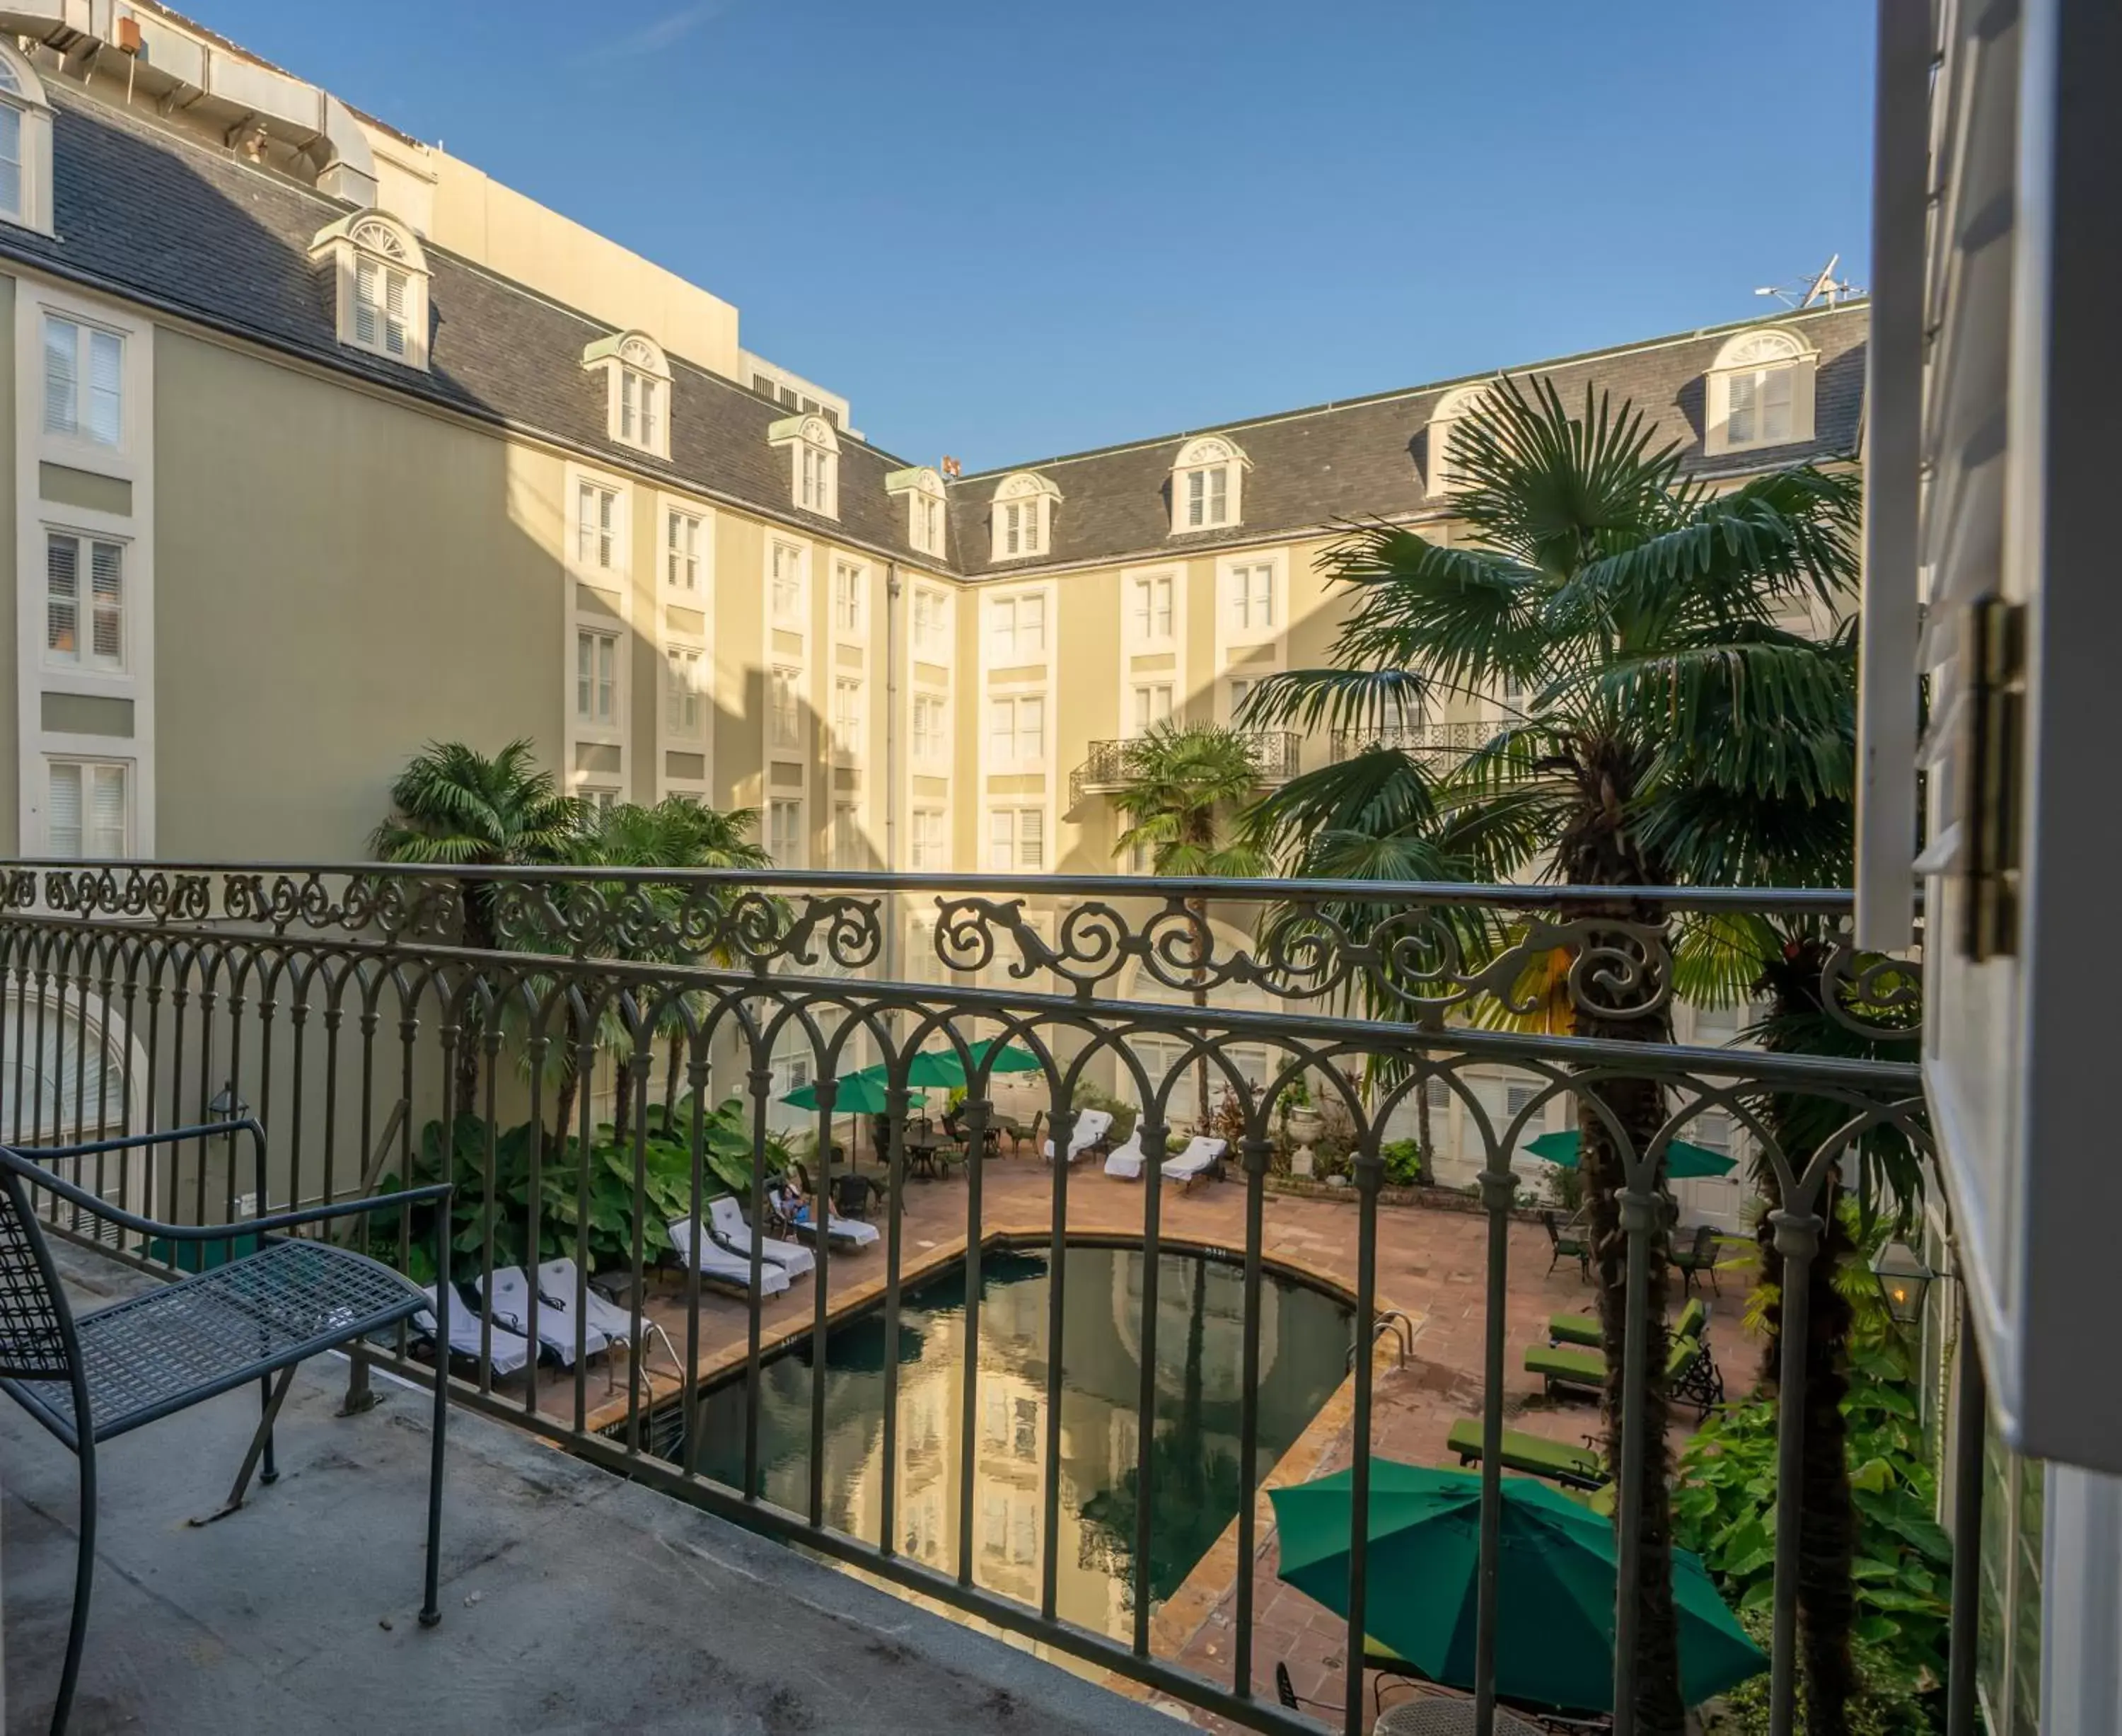 Balcony/Terrace in Bourbon Orleans Hotel